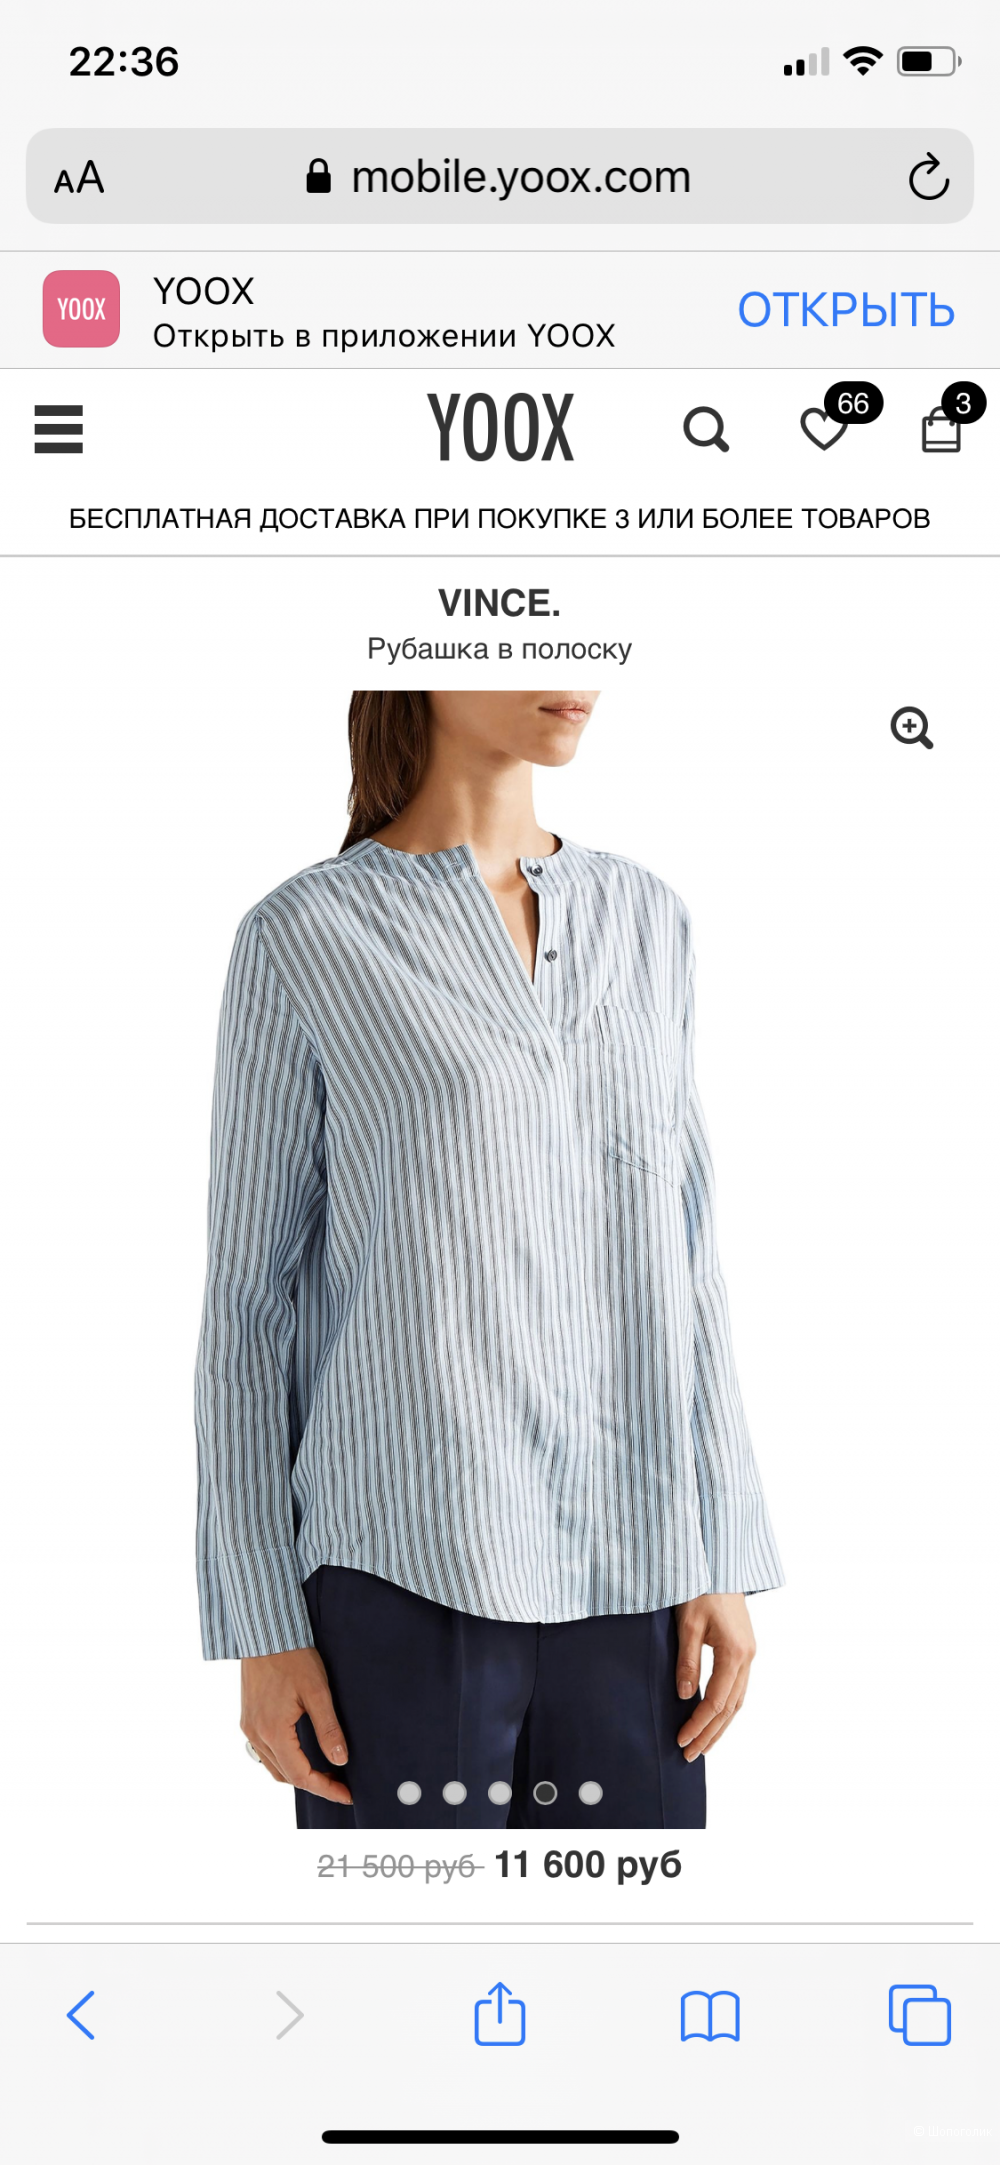 Шелковая блузка Vince. , размер 44-46